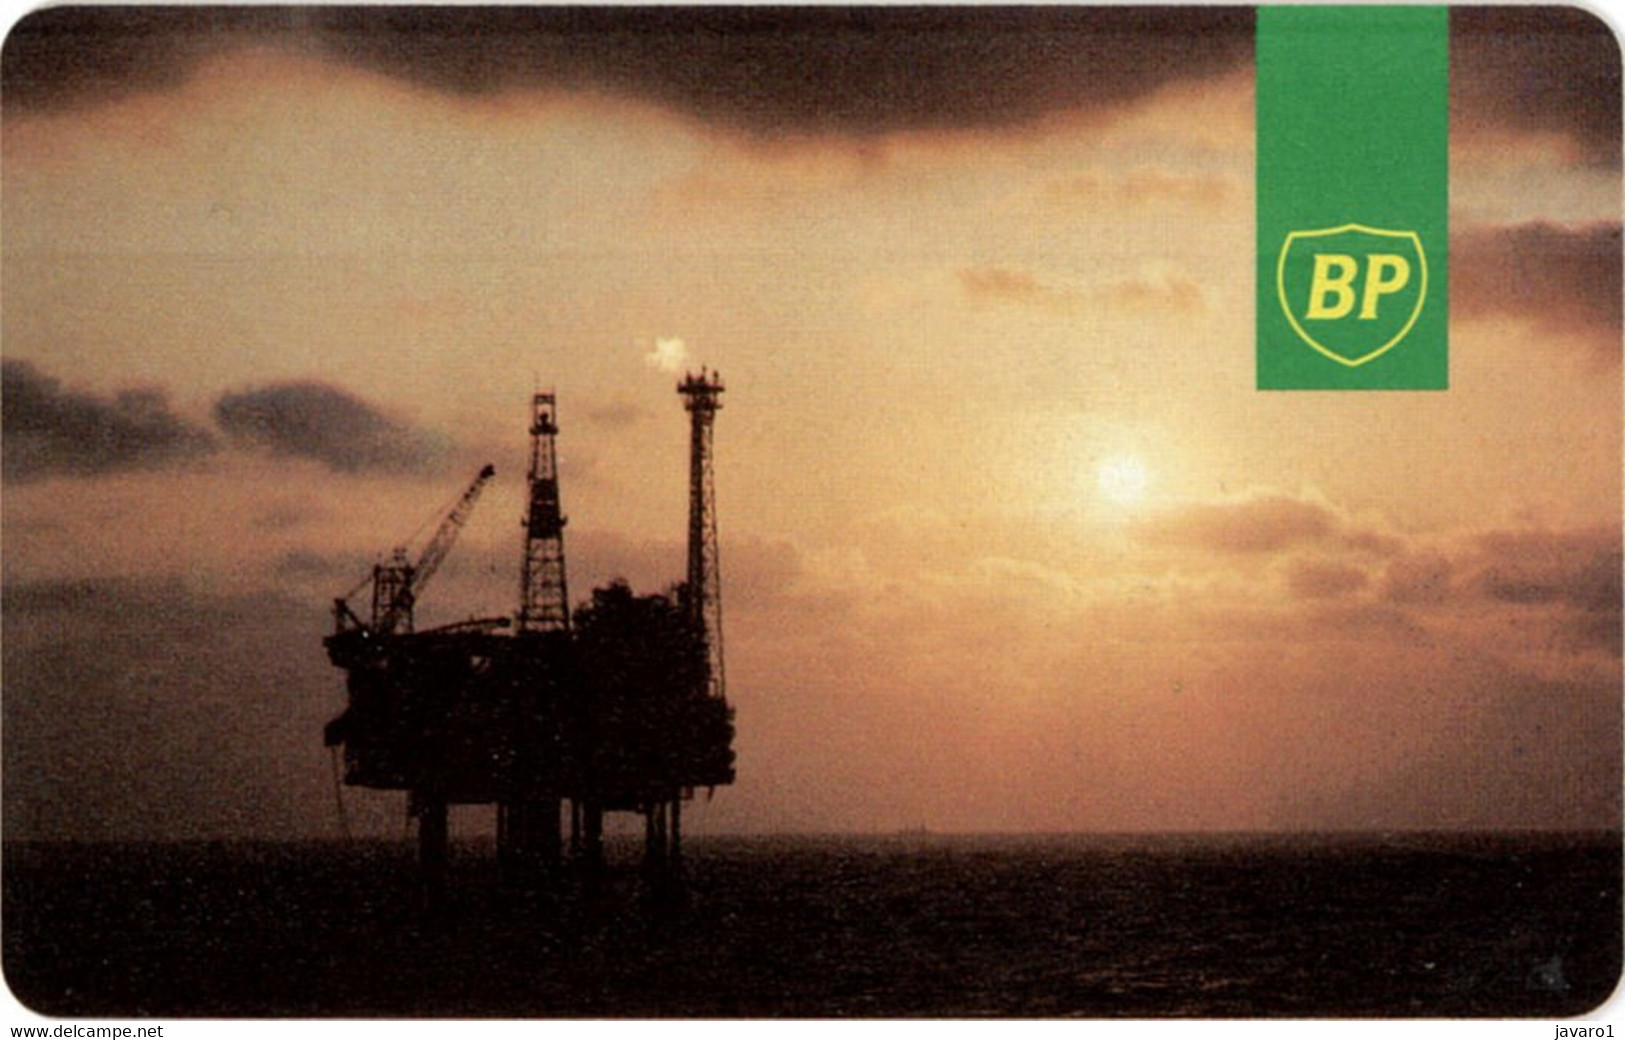 OIL-RIG : R04C BP IPL 20 Black Units USED - Plateformes Pétrolières